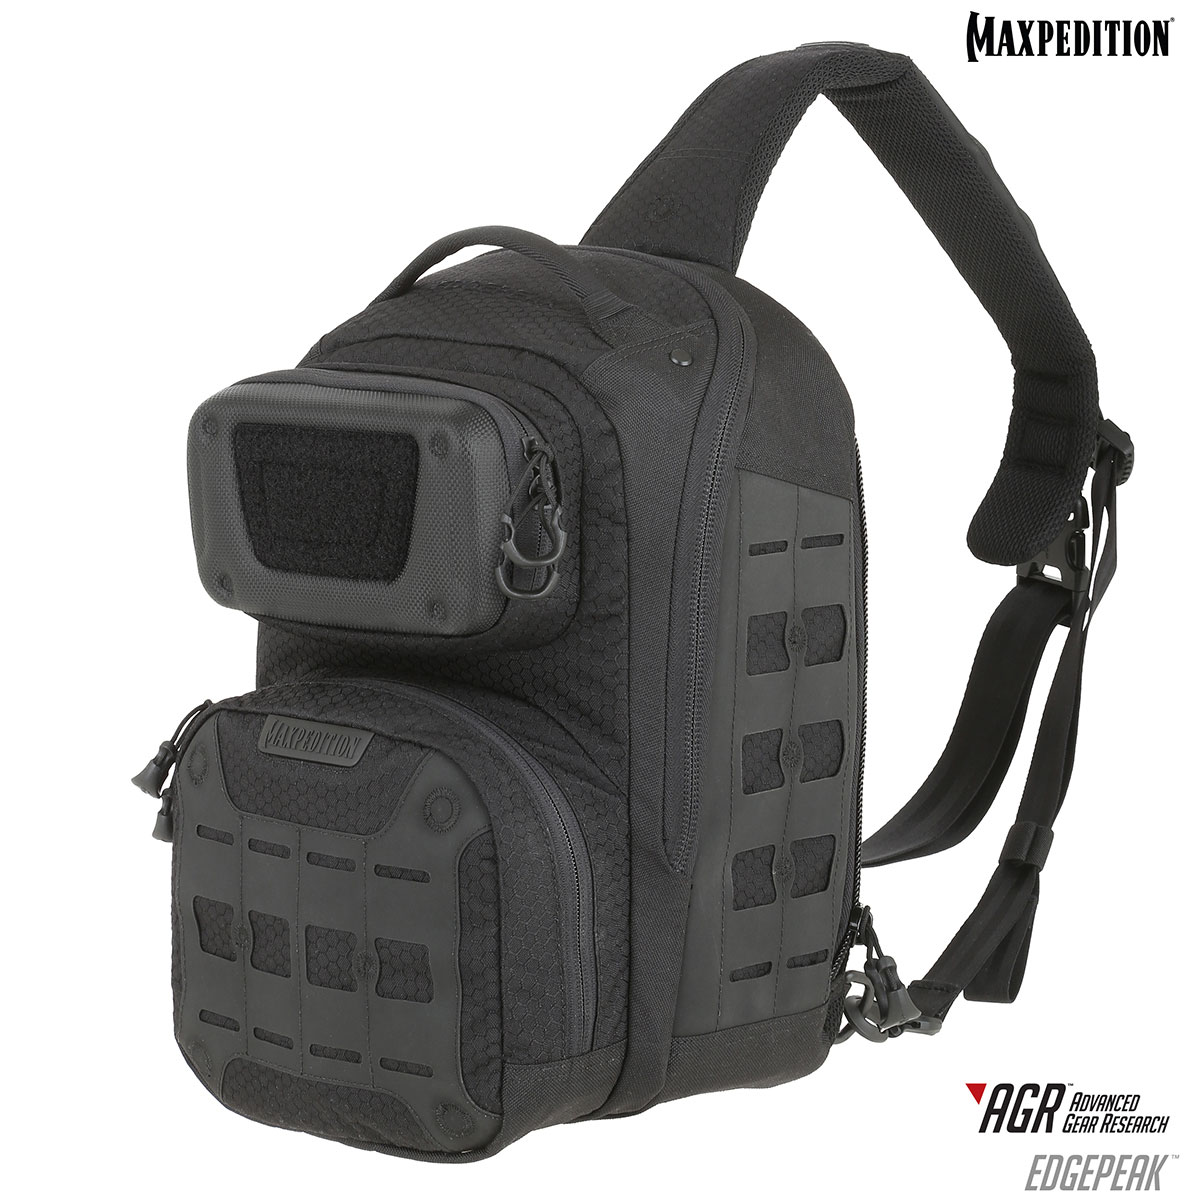 Backpack Maxpedition EDGEPEAK AGR / 15L / 28x23x38 cm Tan 